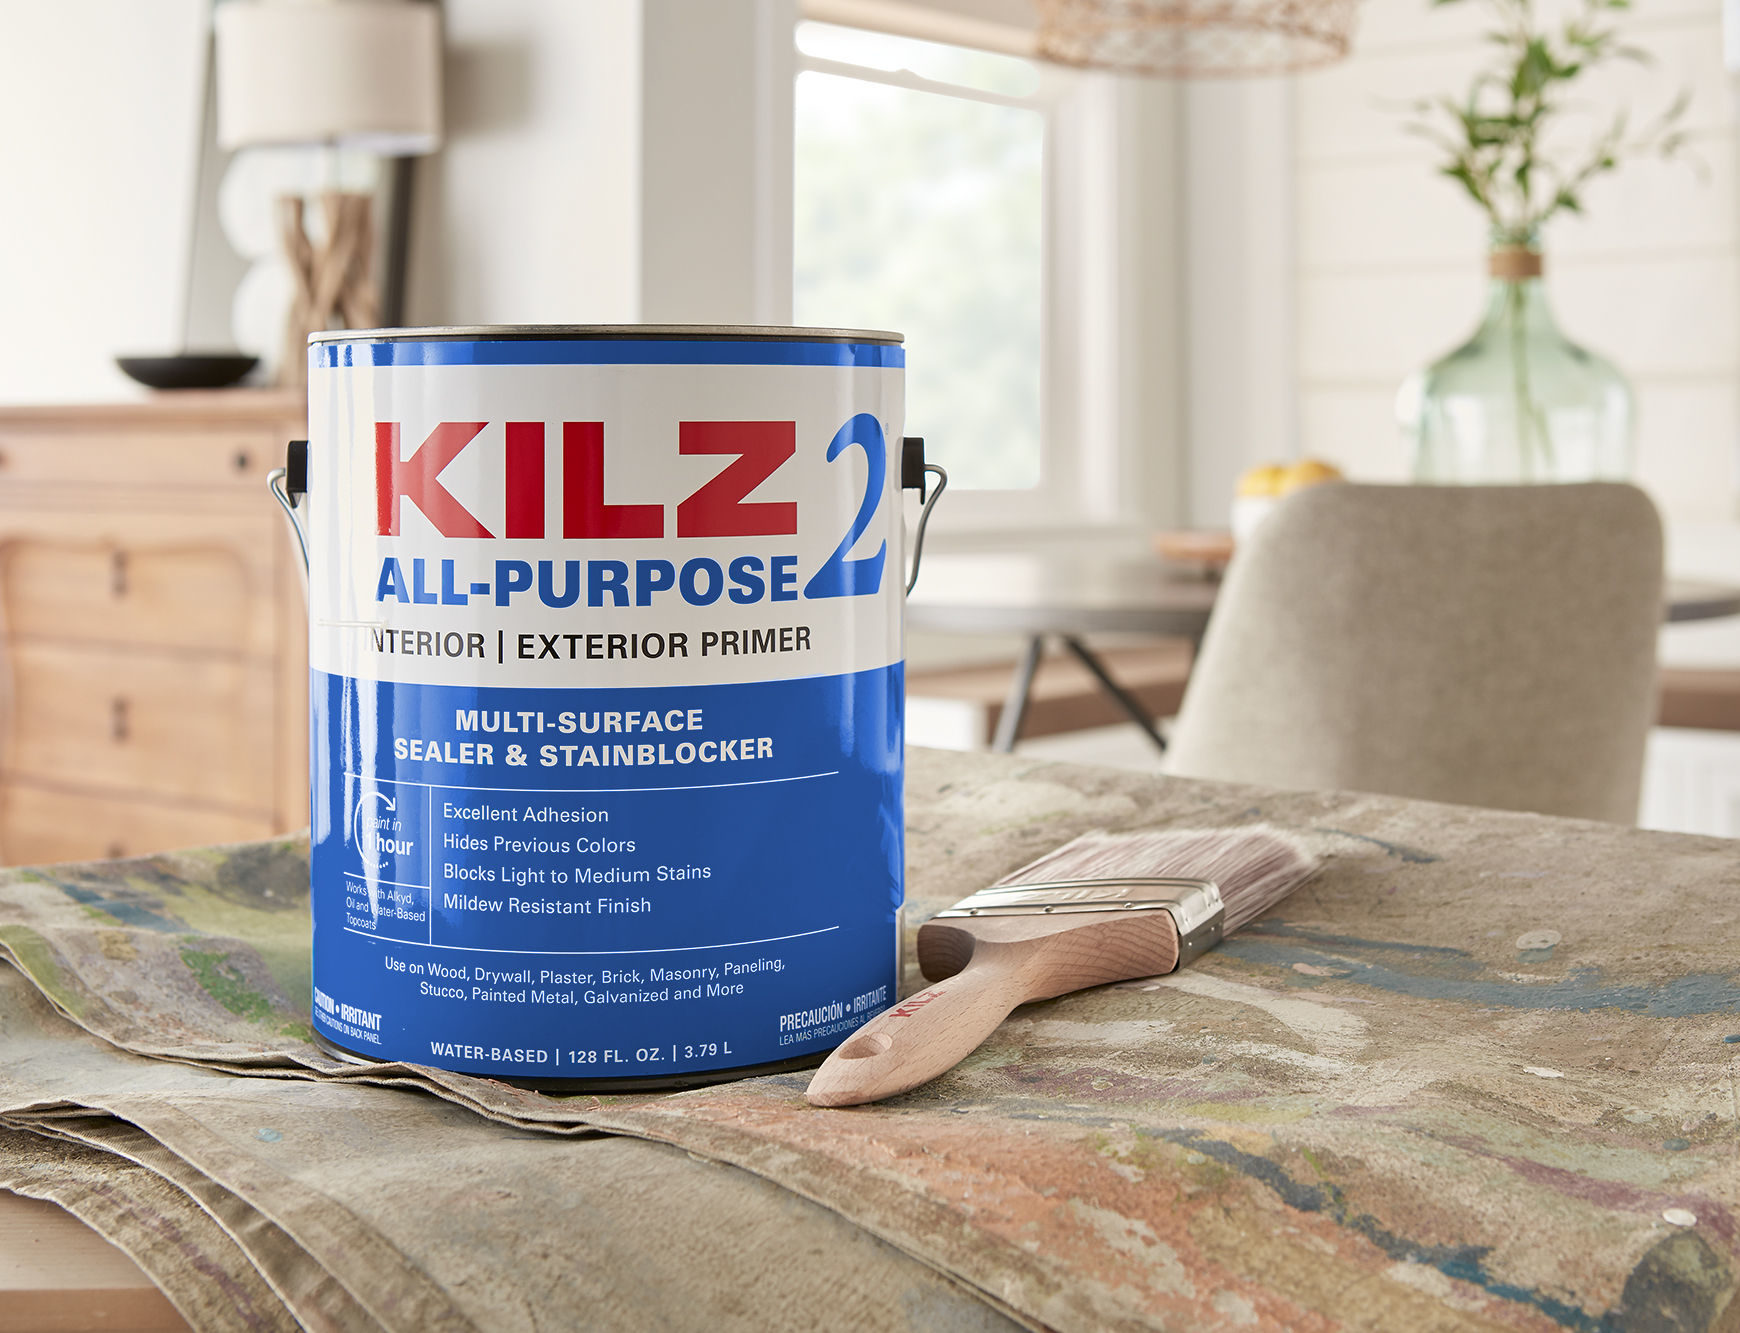 KILZ 2 All-Purpose Interior & Exterior Primer 1 gallon can in a dining room scene